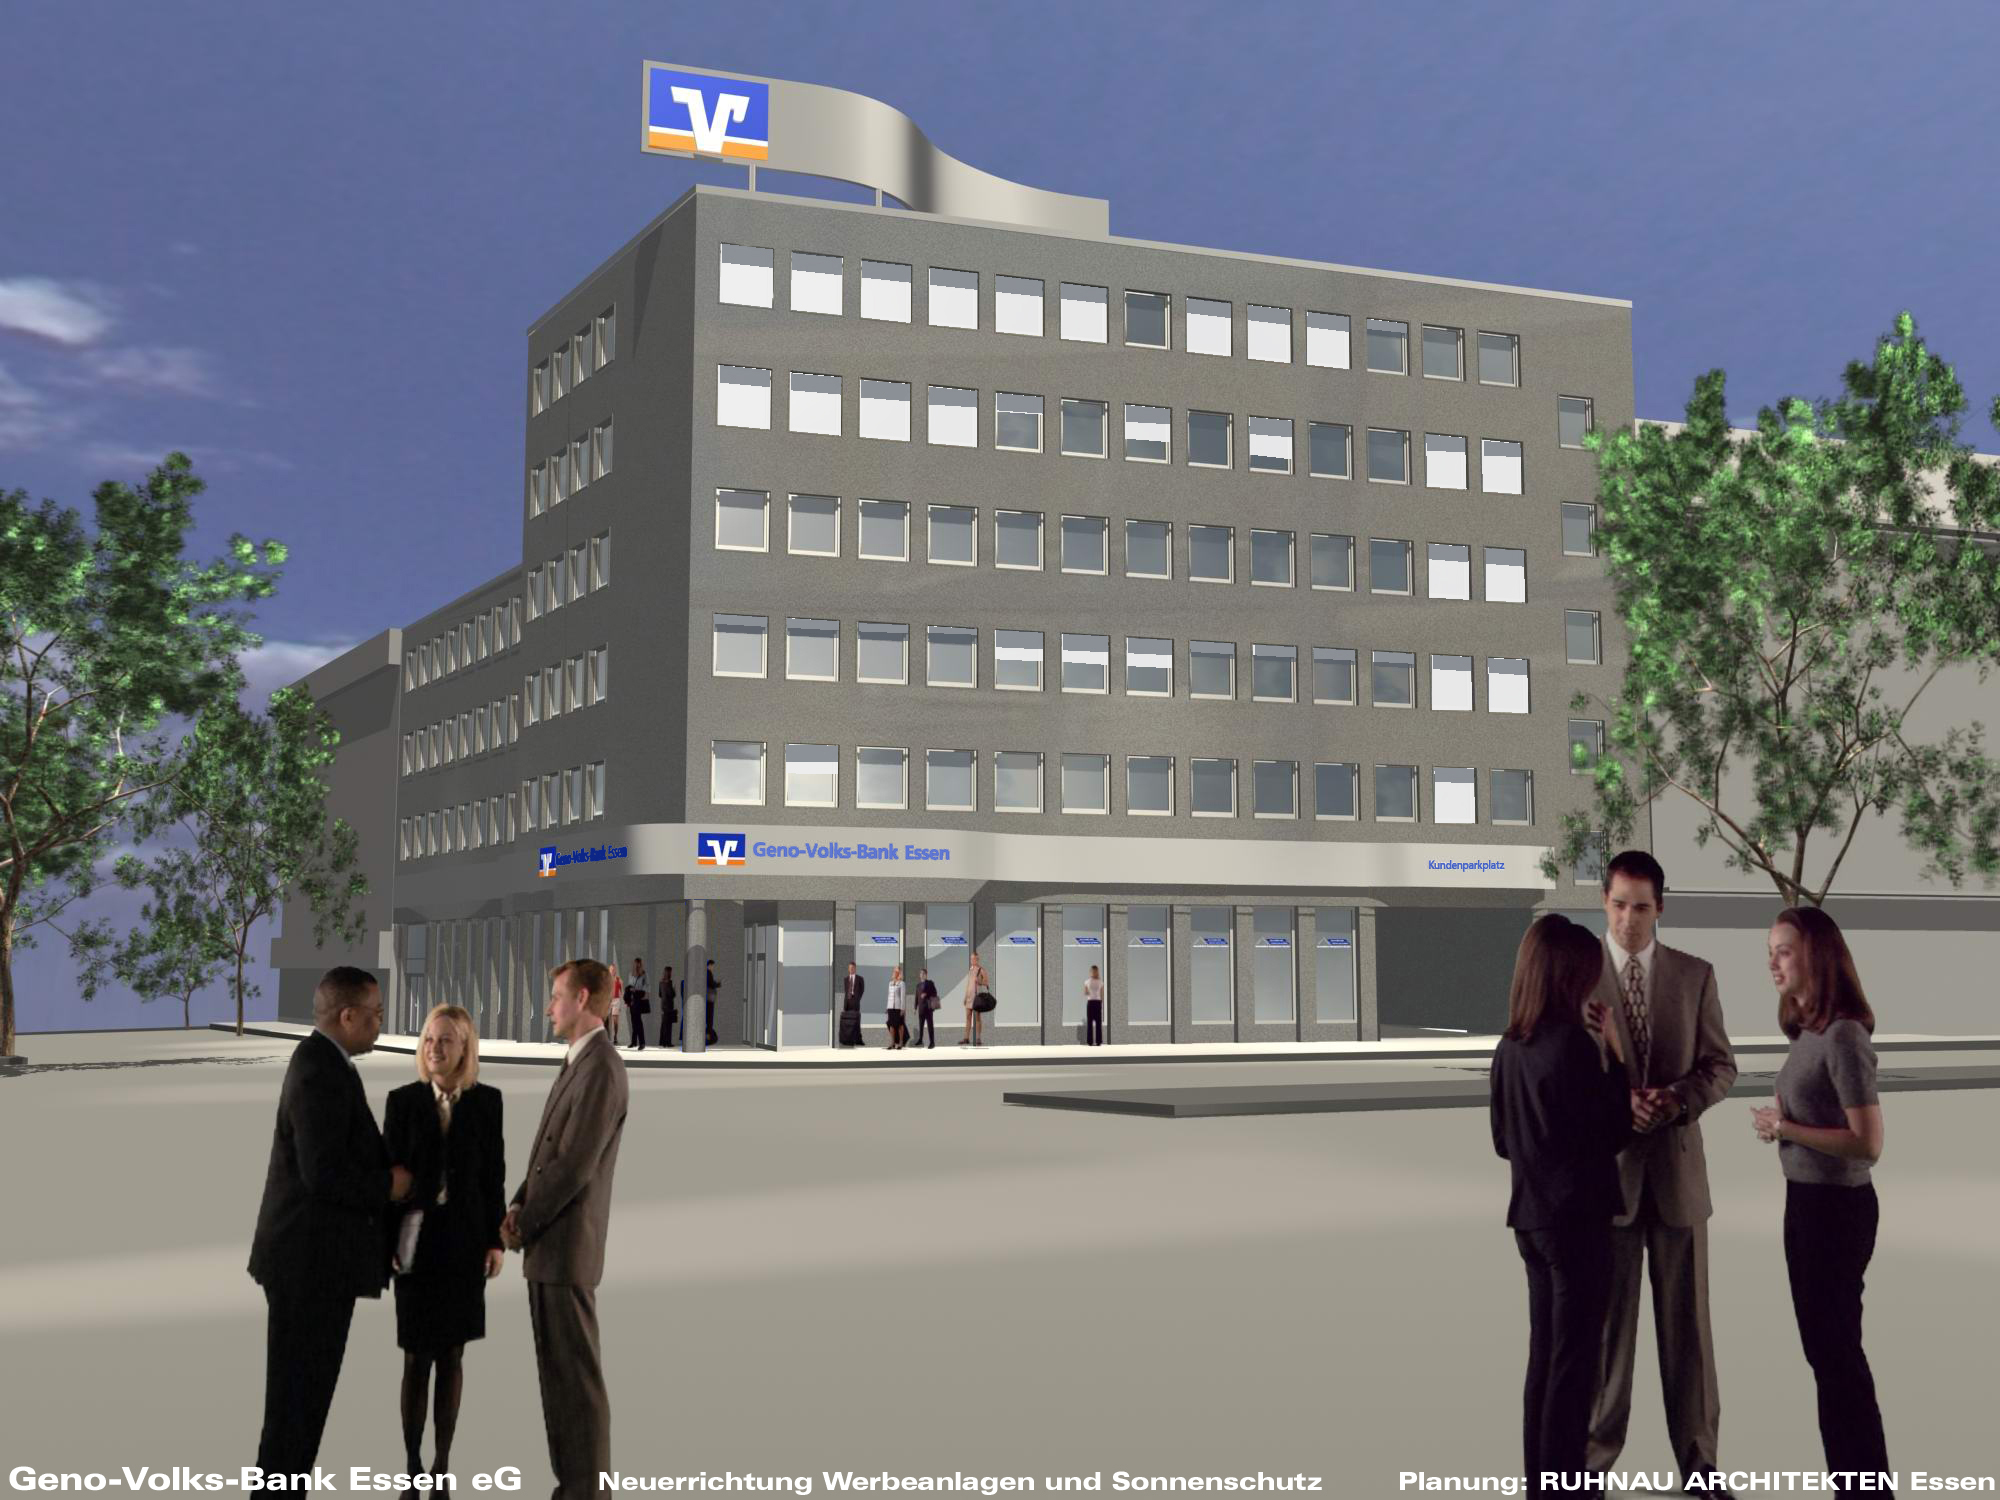 Entwurf Umbau der Zentrale der Geno-Volks-Bank in Essen